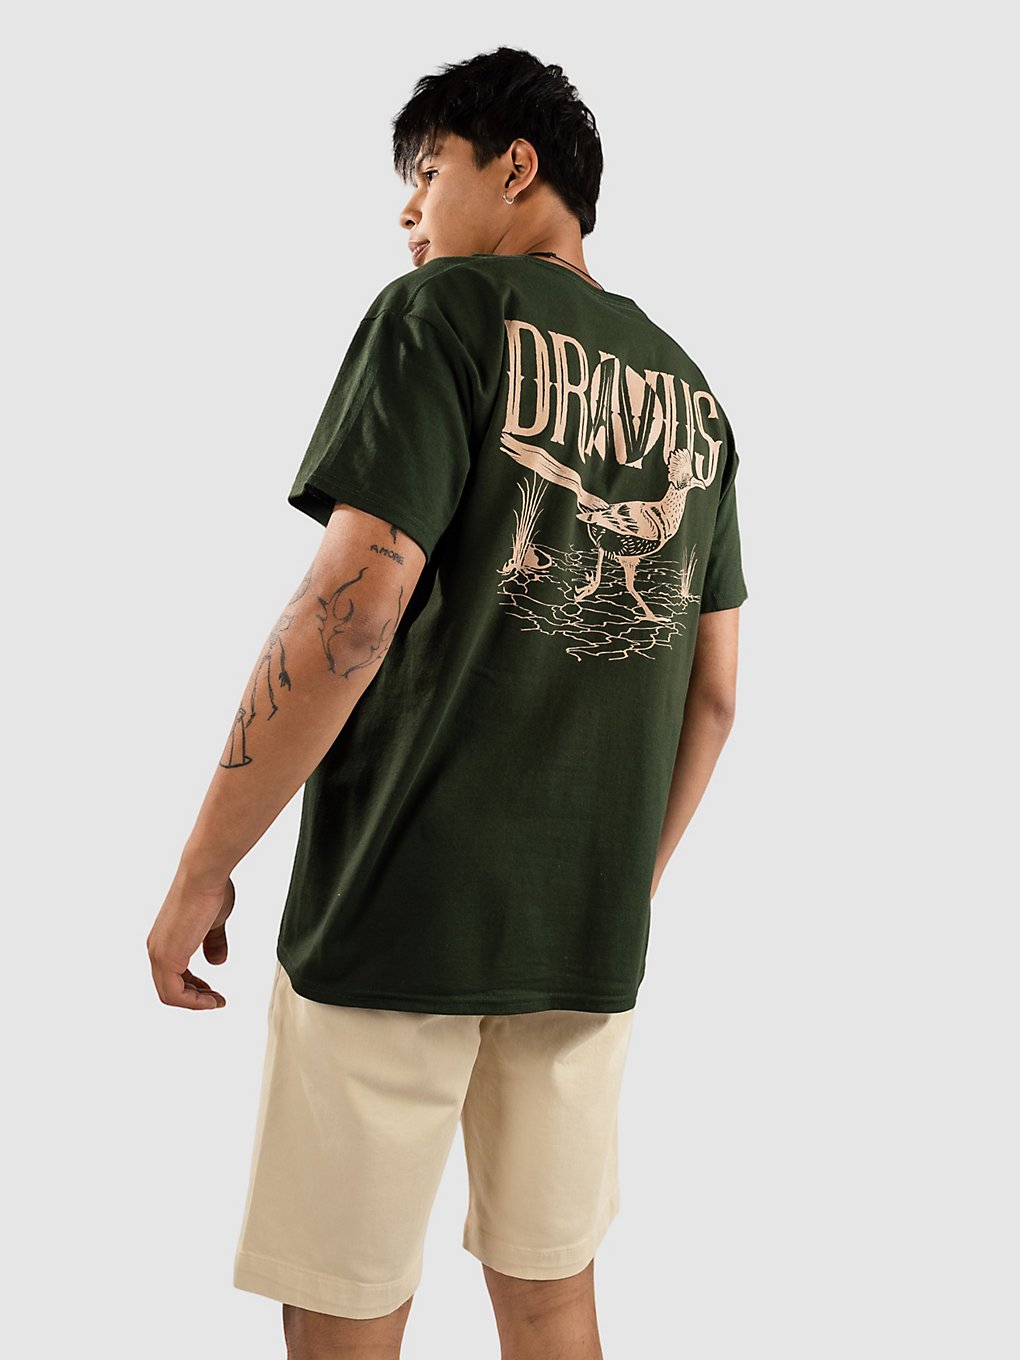 Dravus Road Runner T-Shirt groen